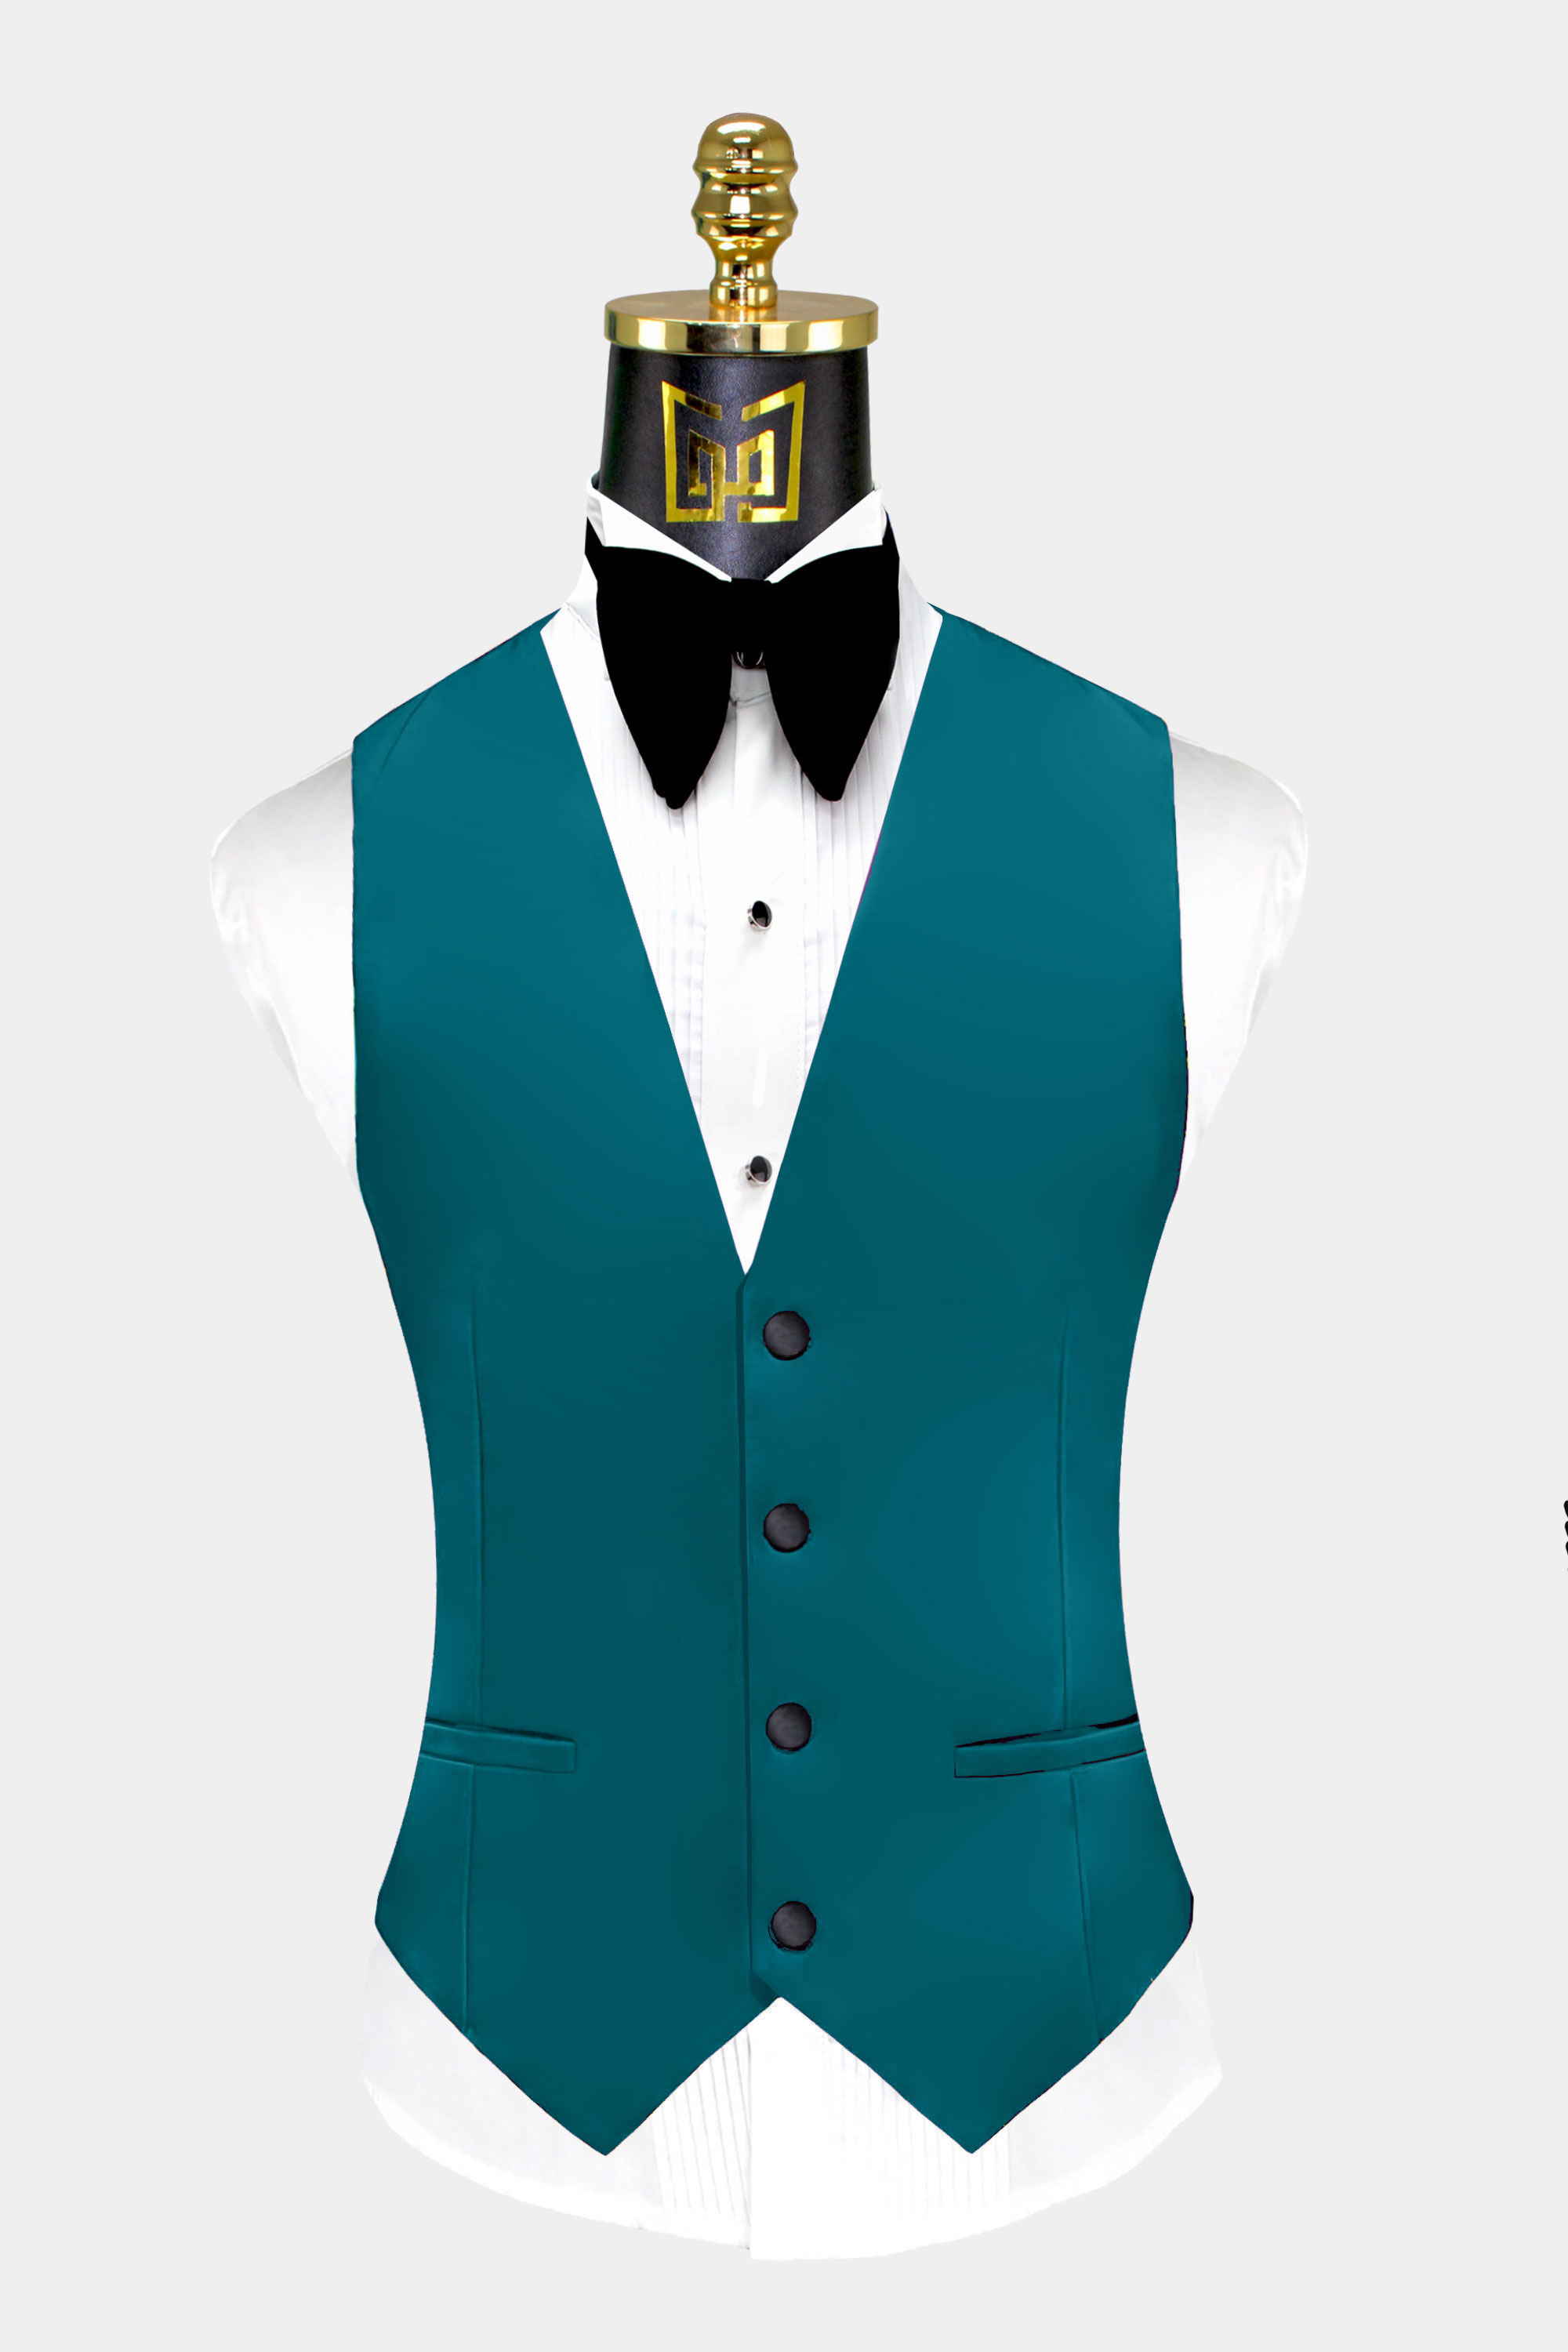 Mens-Teal-Blue-Tuxedo-Vest-Groom-Wedding-Suit-Waistcoat-from-Gentlemansguru.com